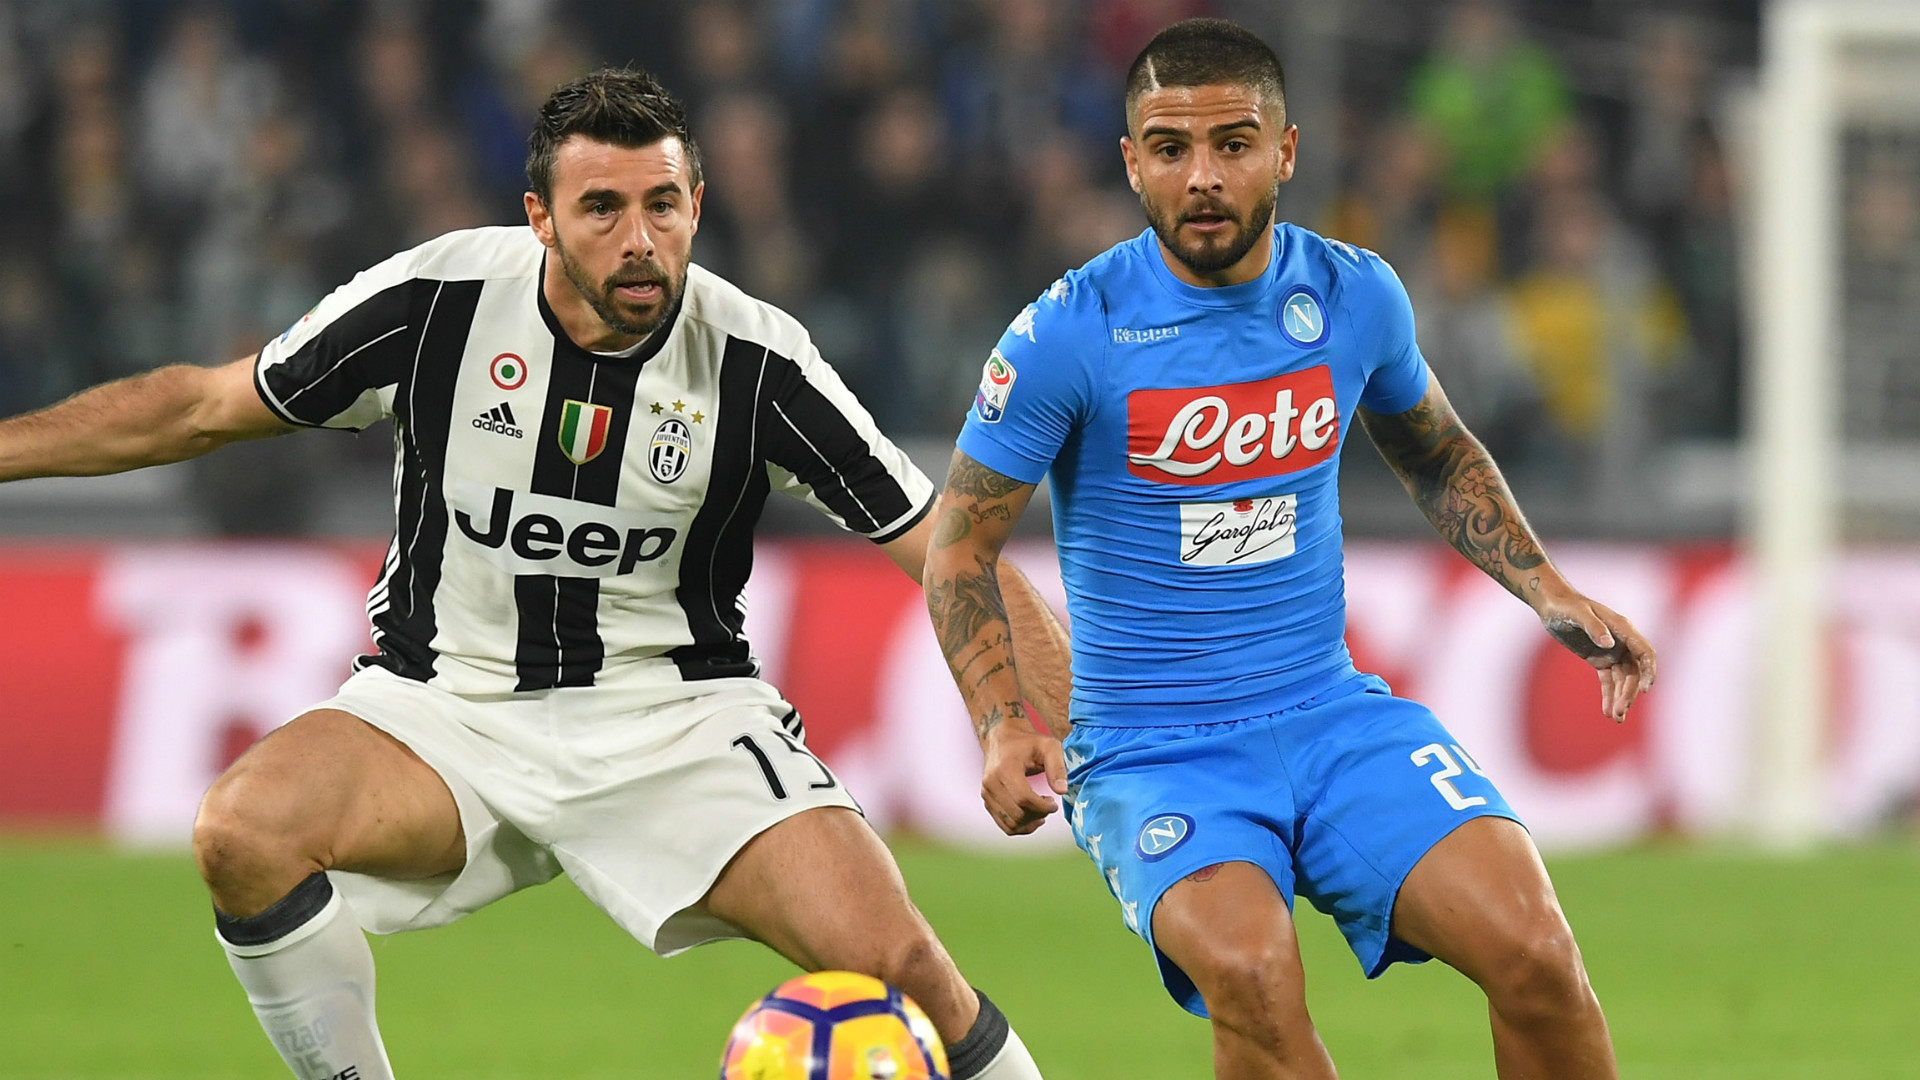 Calcio Napoli e Juventus, dati a confronto: le potenzialità delle due società